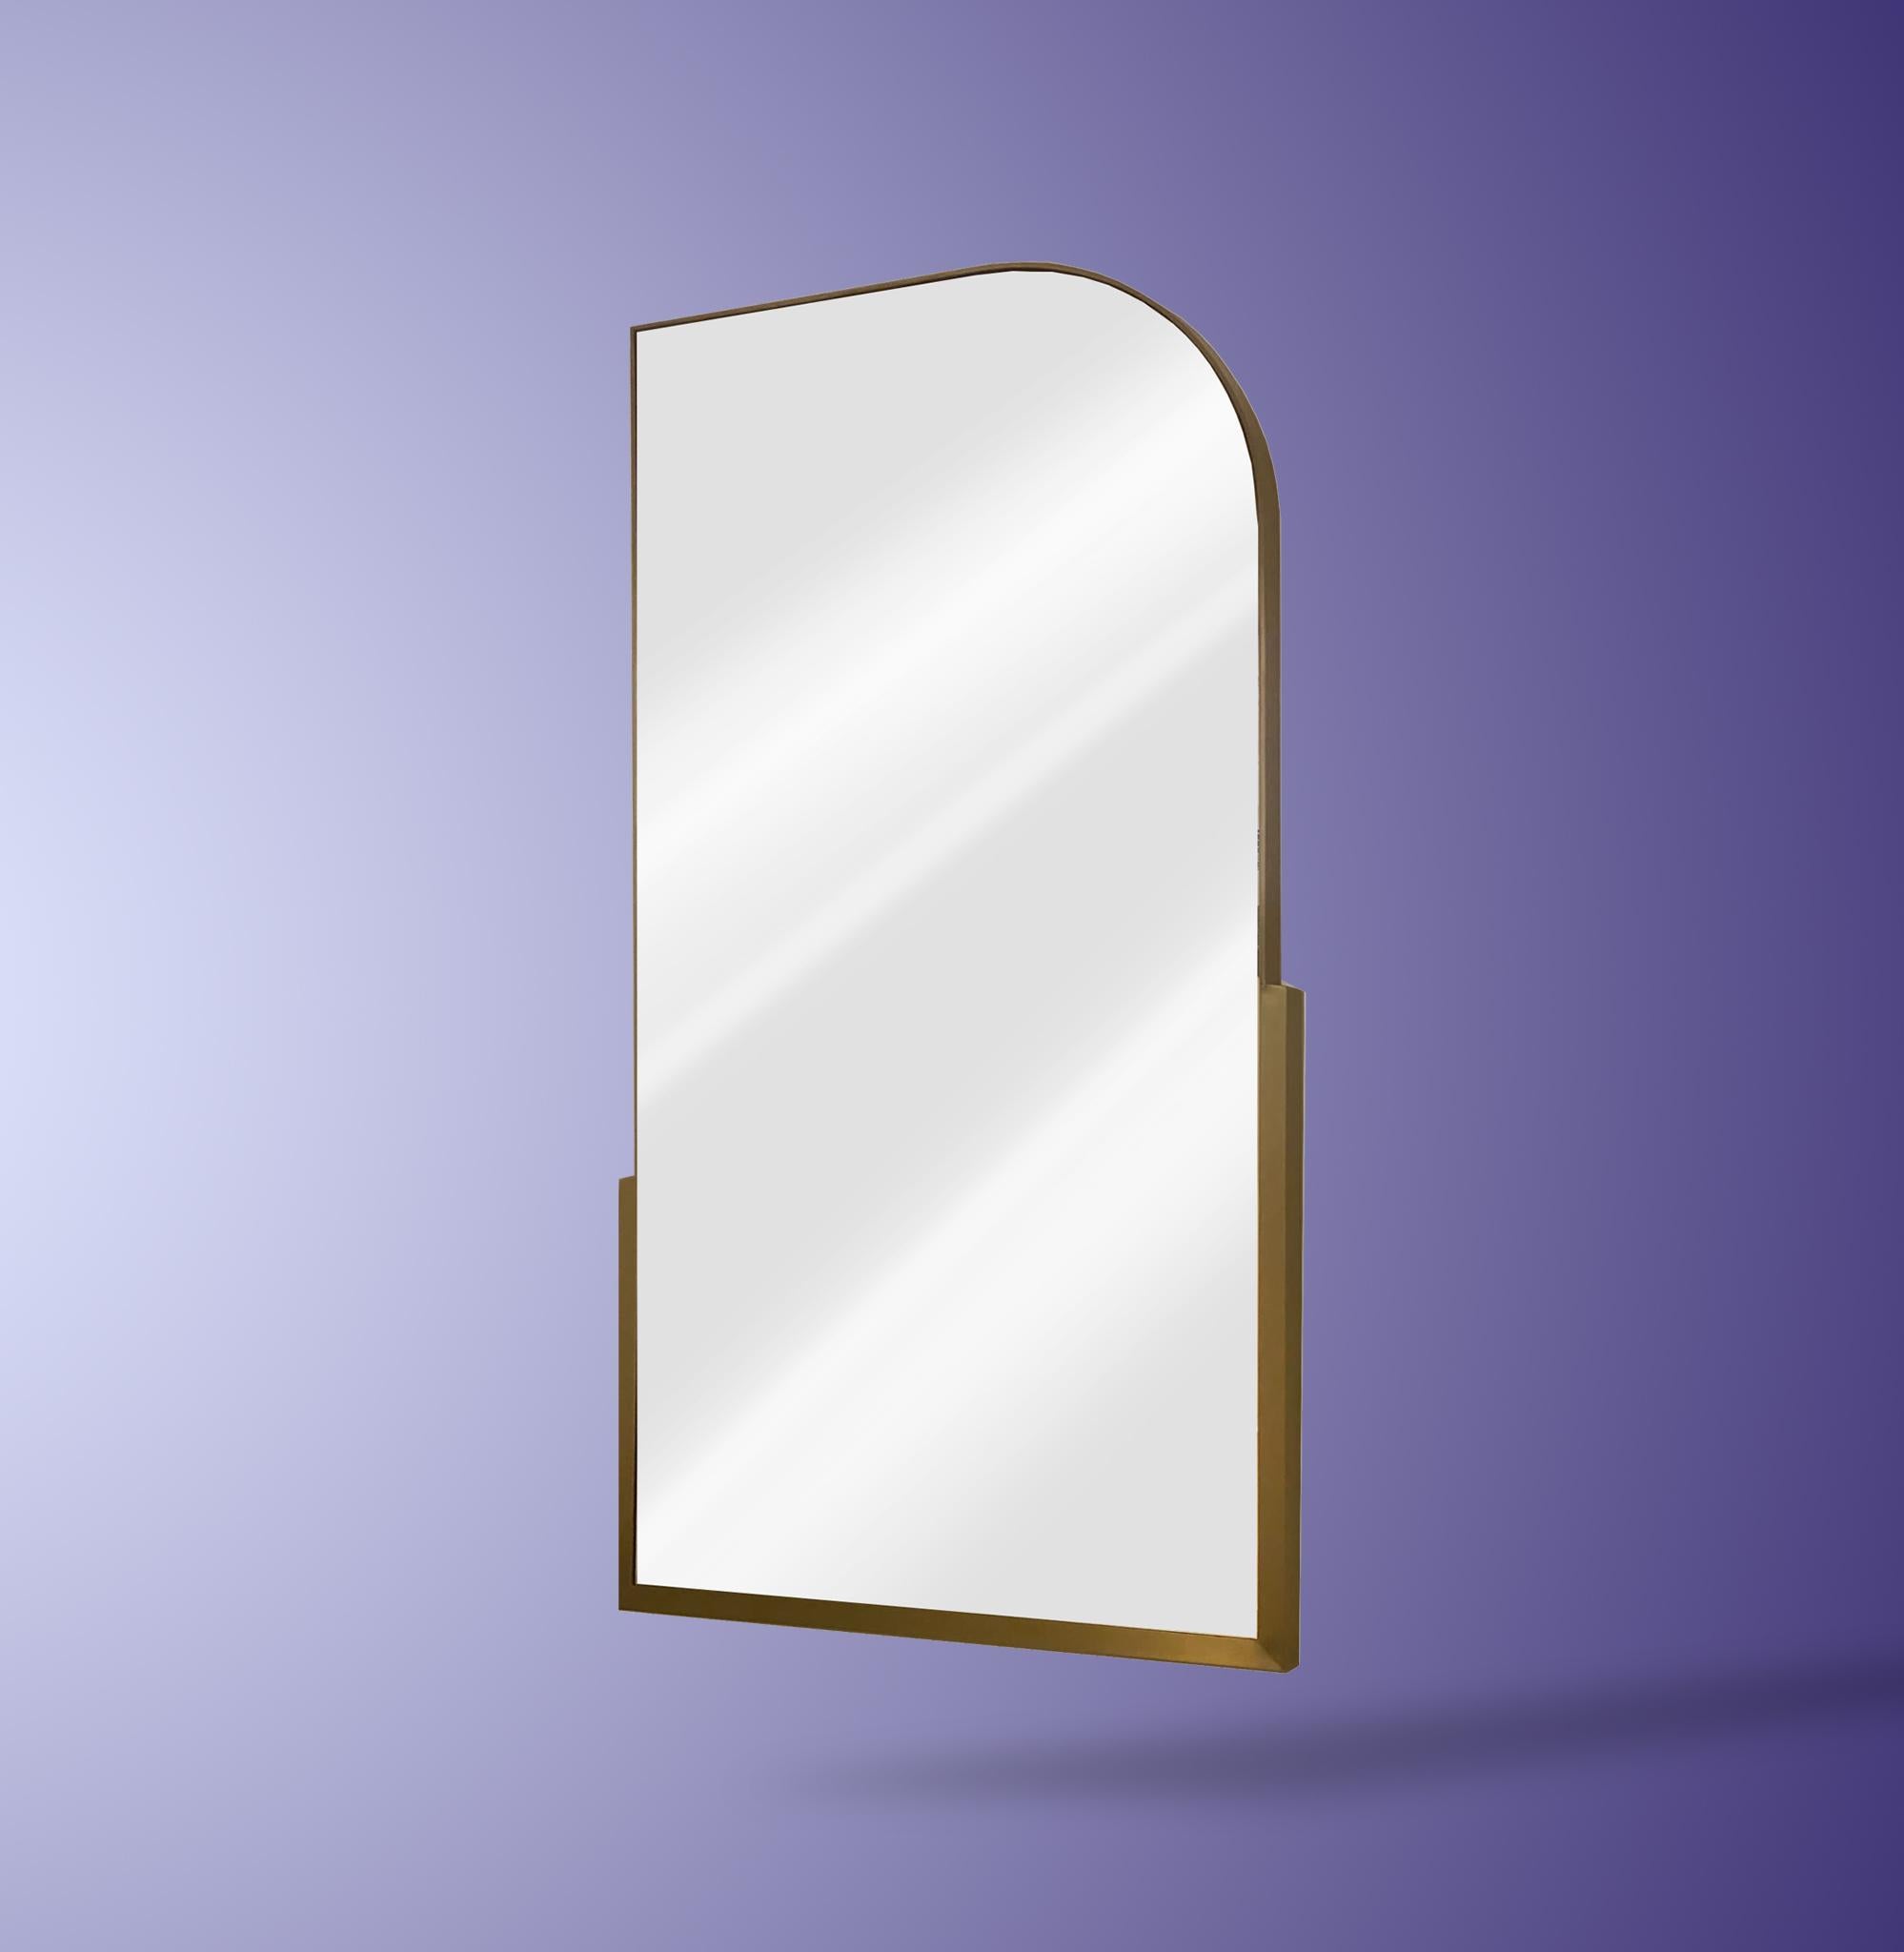 Ce miroir est composé d'un cadre en laiton à double épaisseur. 
Peut être laissé au sol, adossé à un mur ou accroché au mur à l'aide d'un taquet français.

Comme tous nos miroirs, ce miroir est fabriqué sur commande et est donc hautement